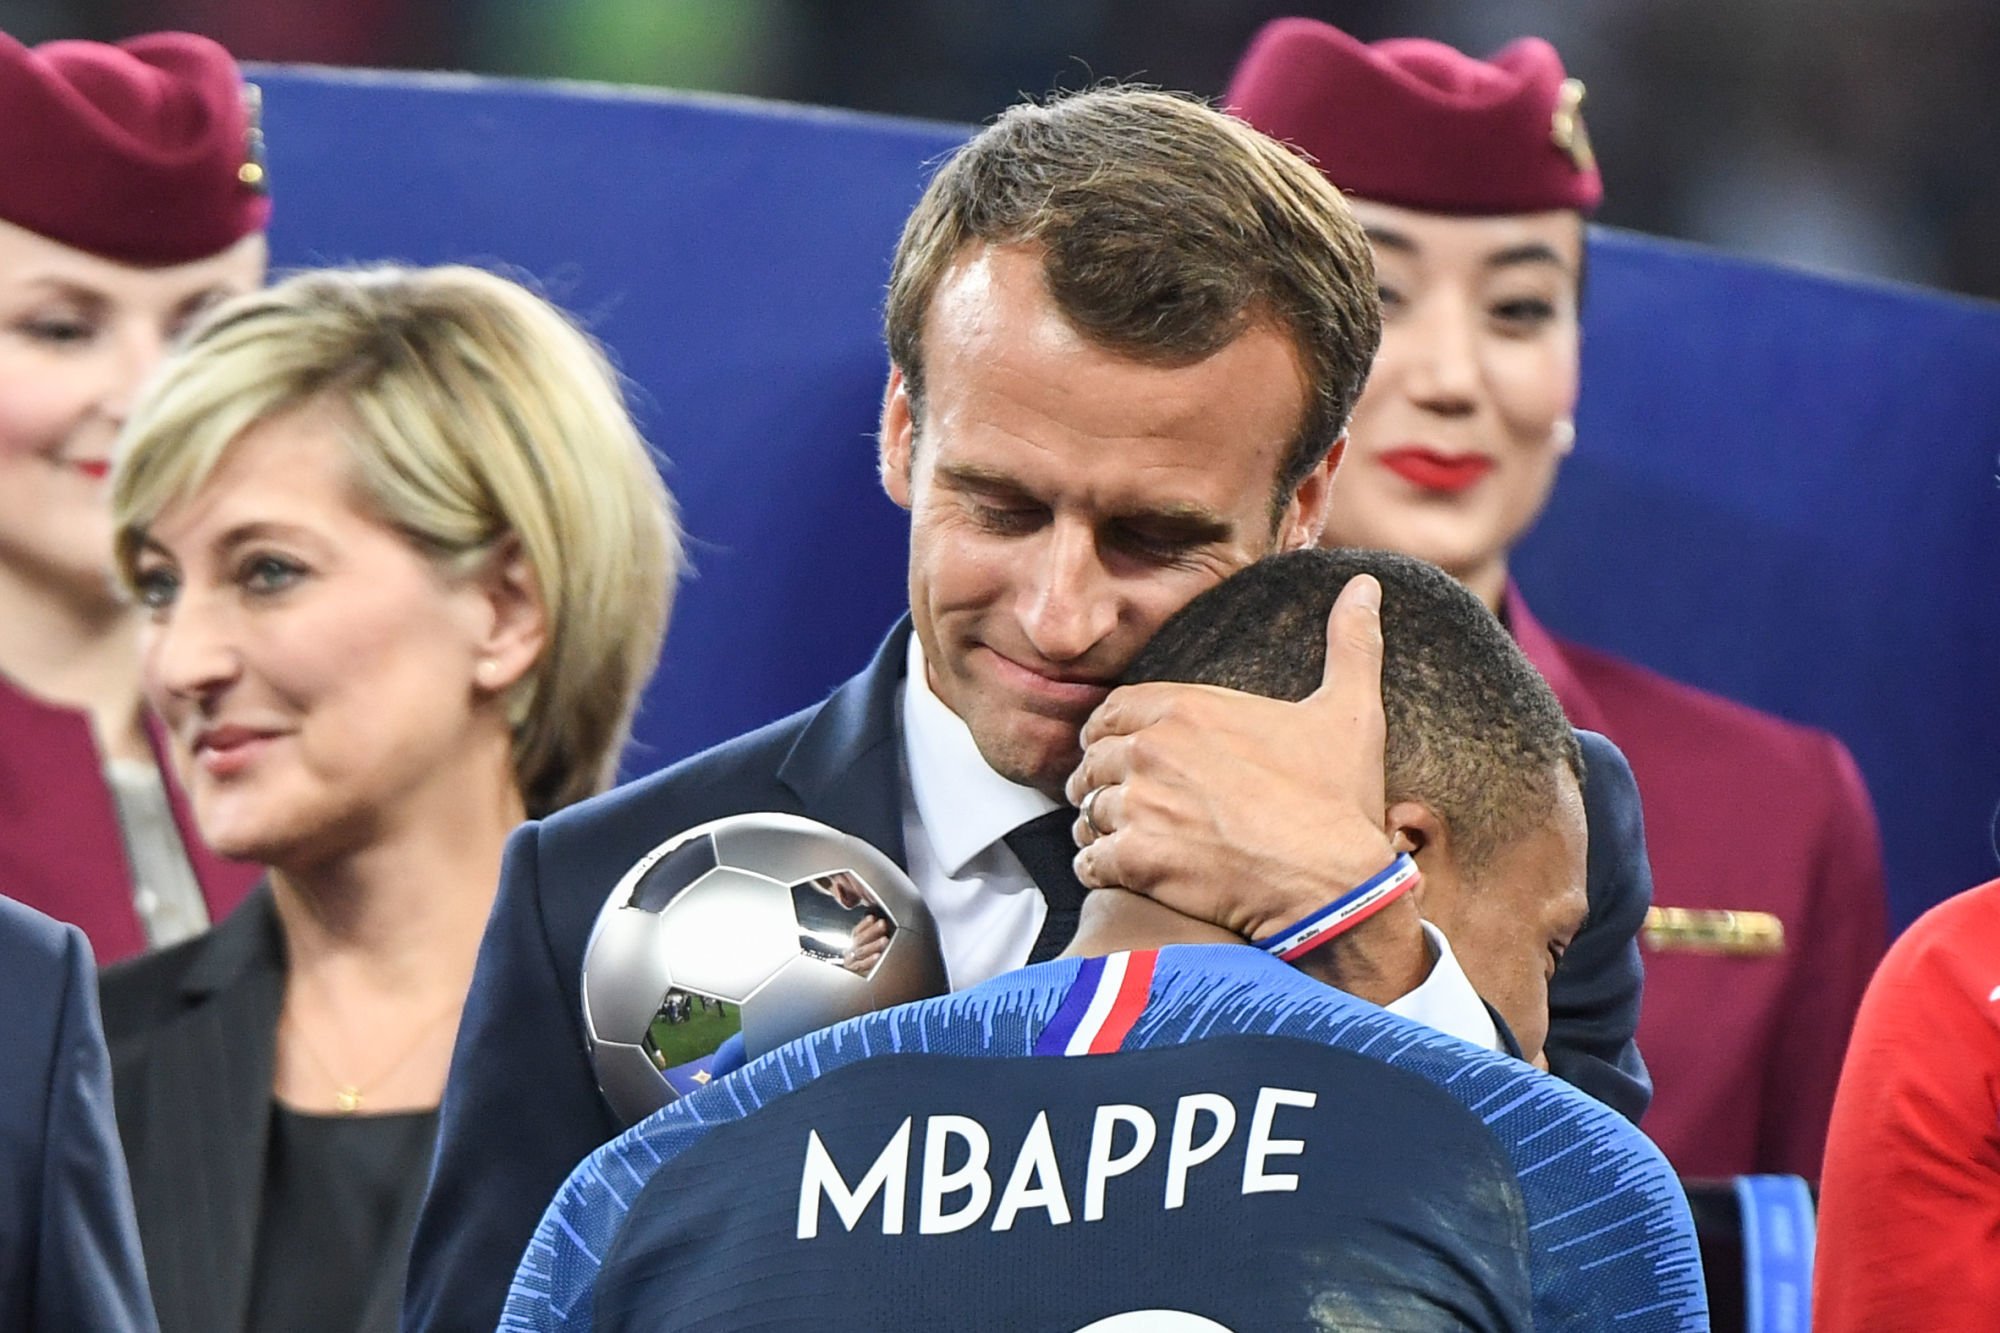  Emmanuel Macron fan de foot @AFP